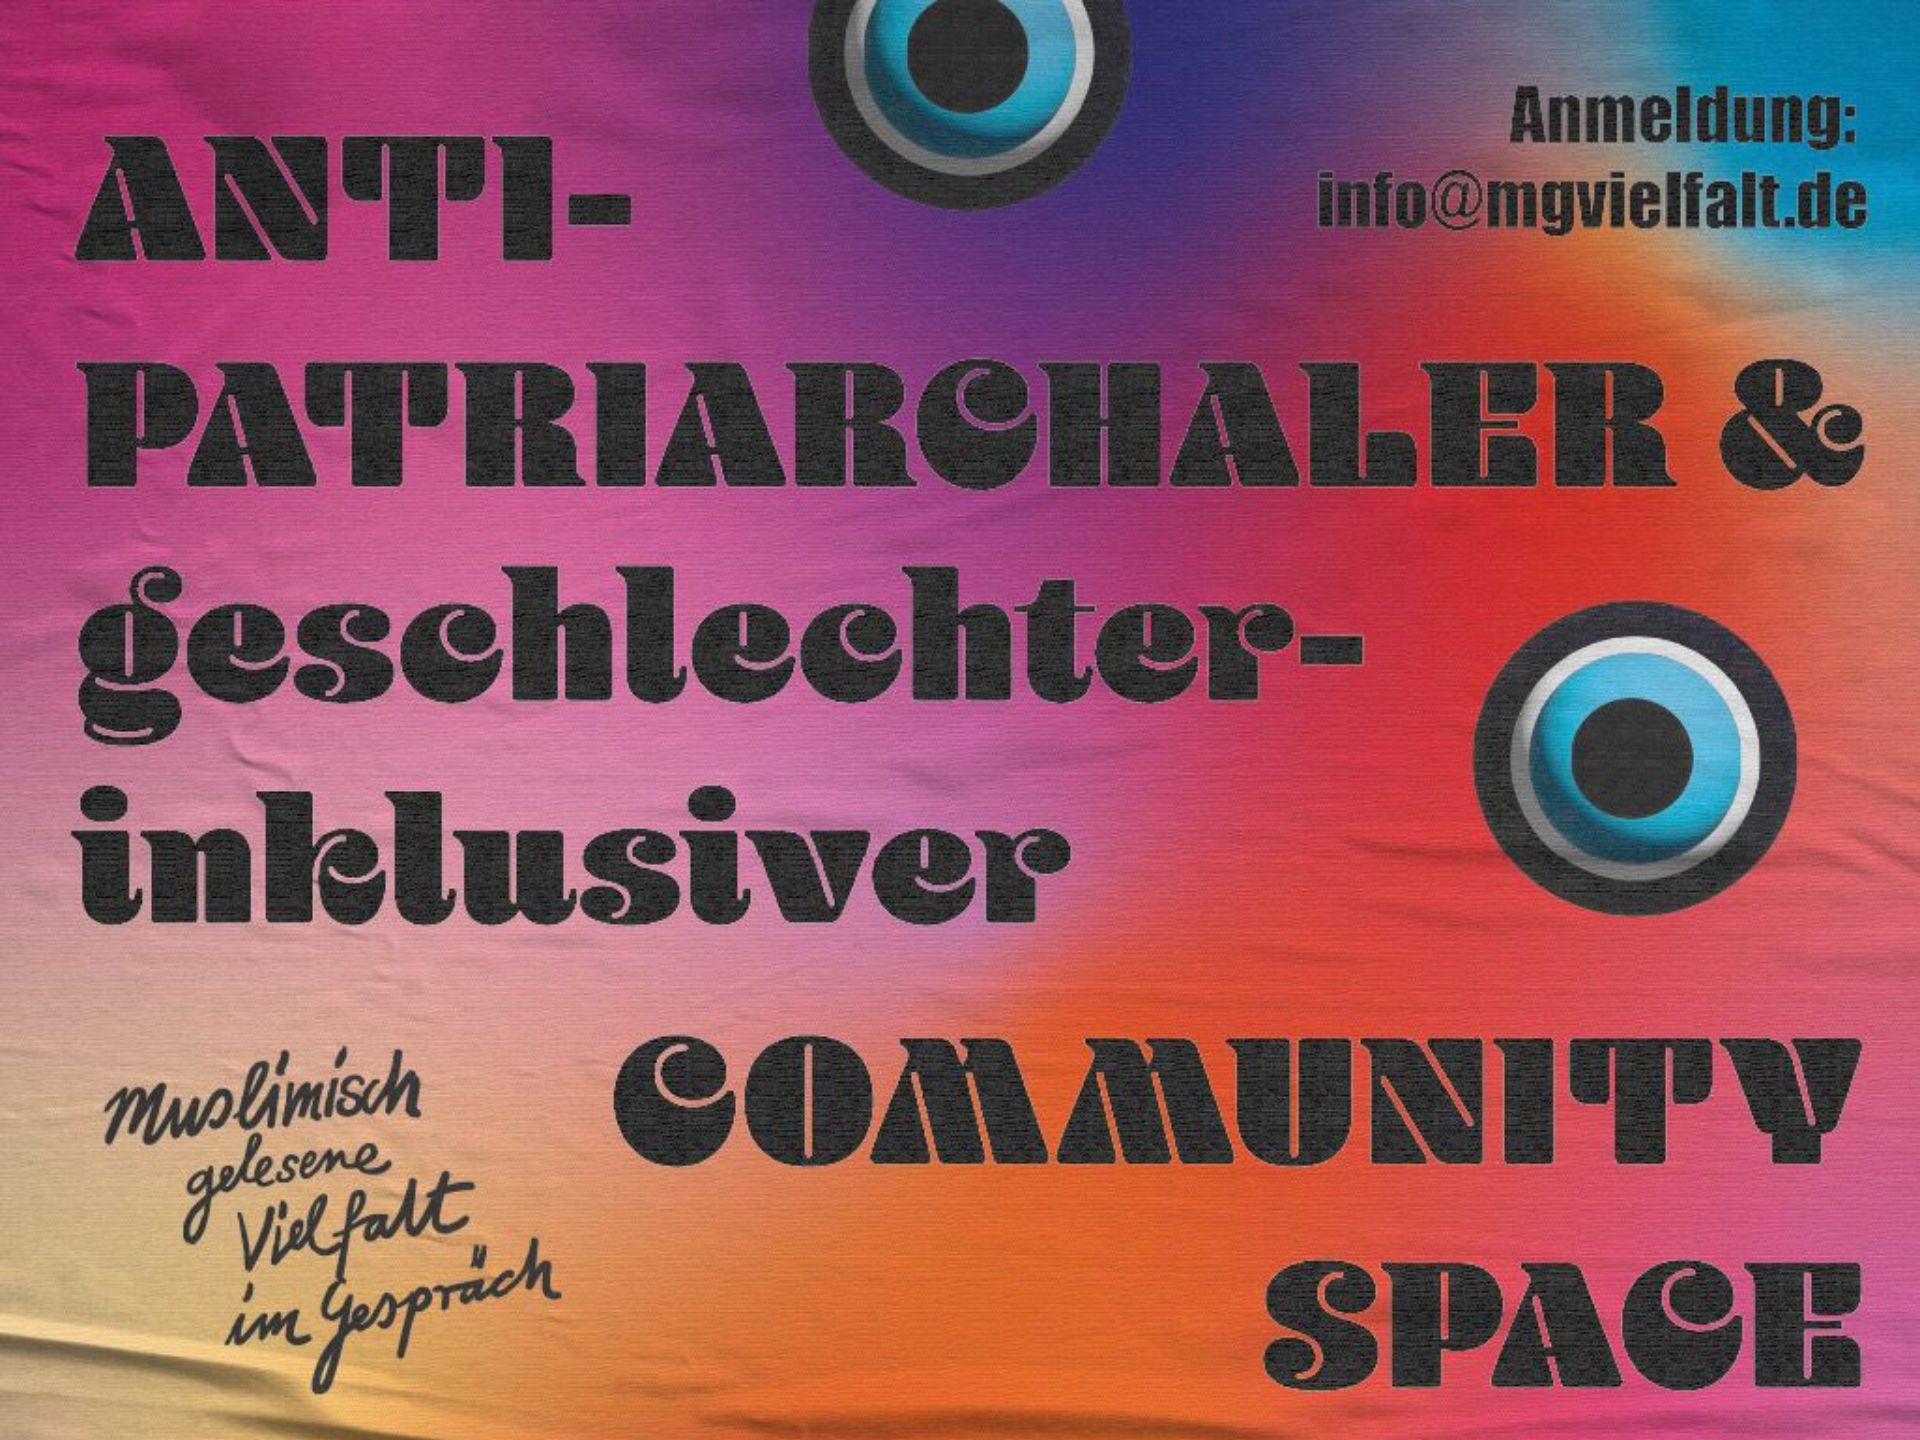 Workshops + Talks | Anti-patriarchaler und geschlechterinklusiver Community-Space